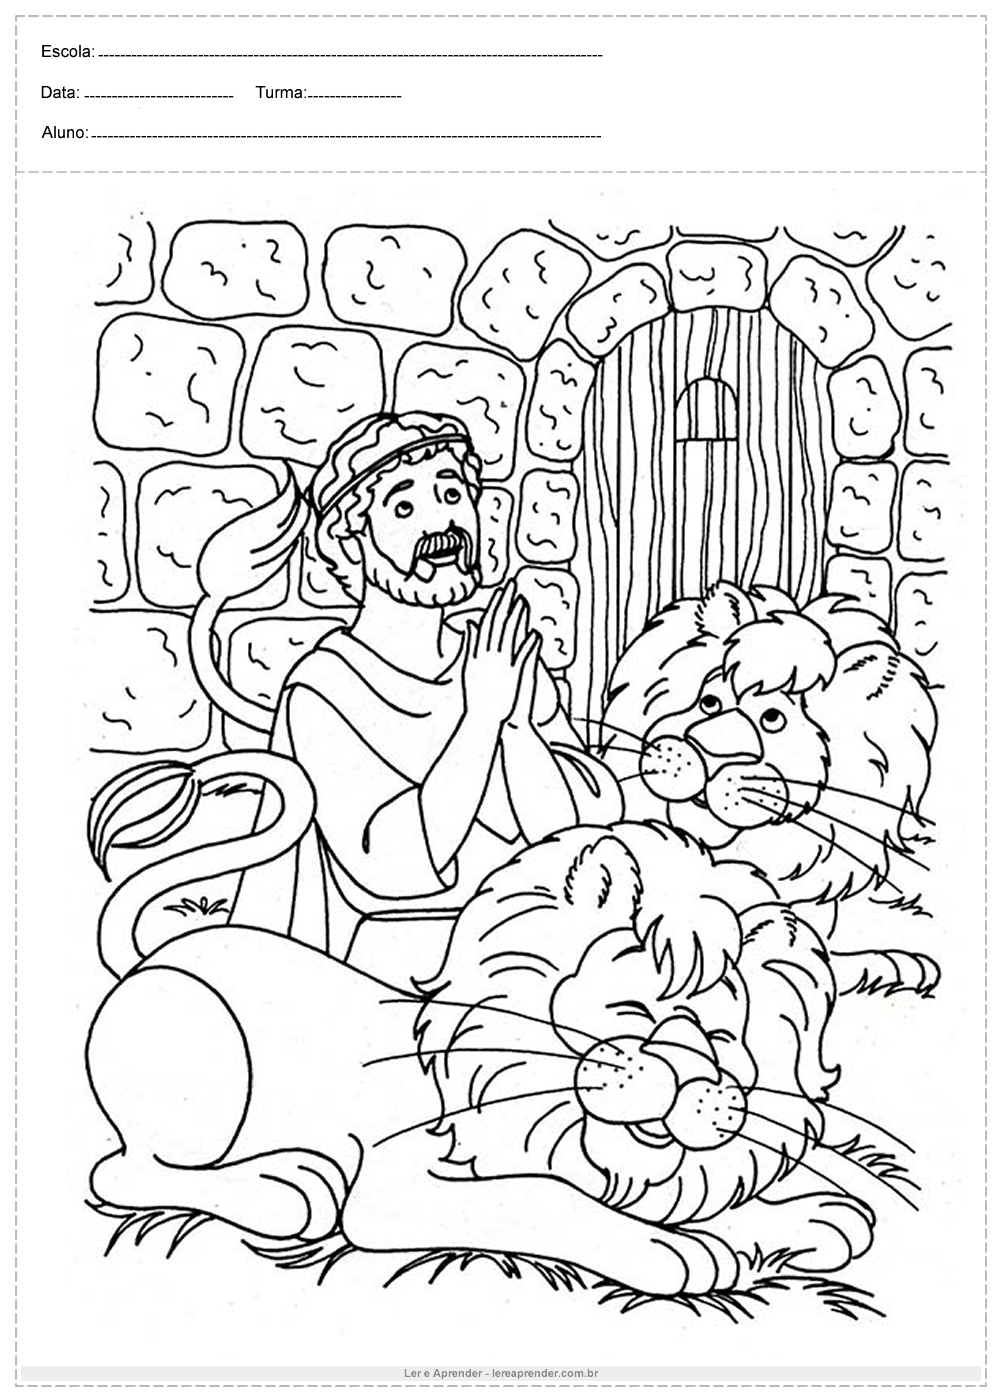 Atividade de ensino religioso Daniel e os leões